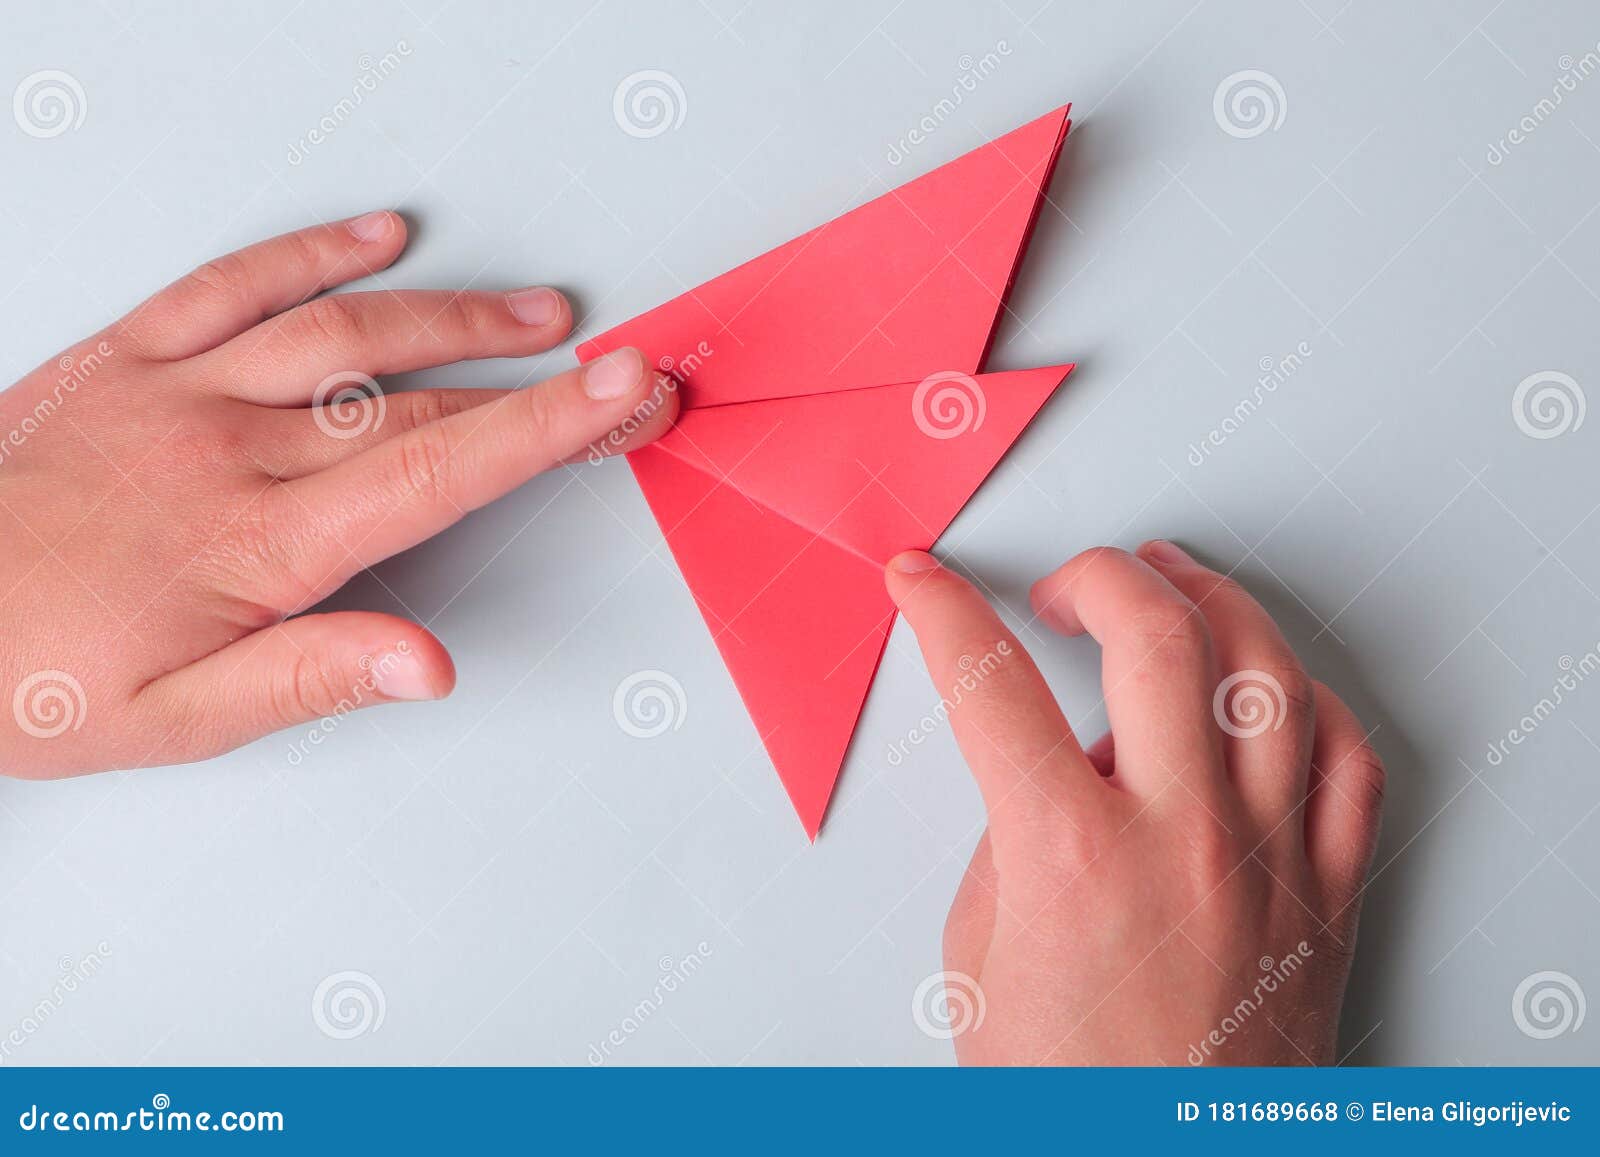 Поделки LORI Модульное оригами 